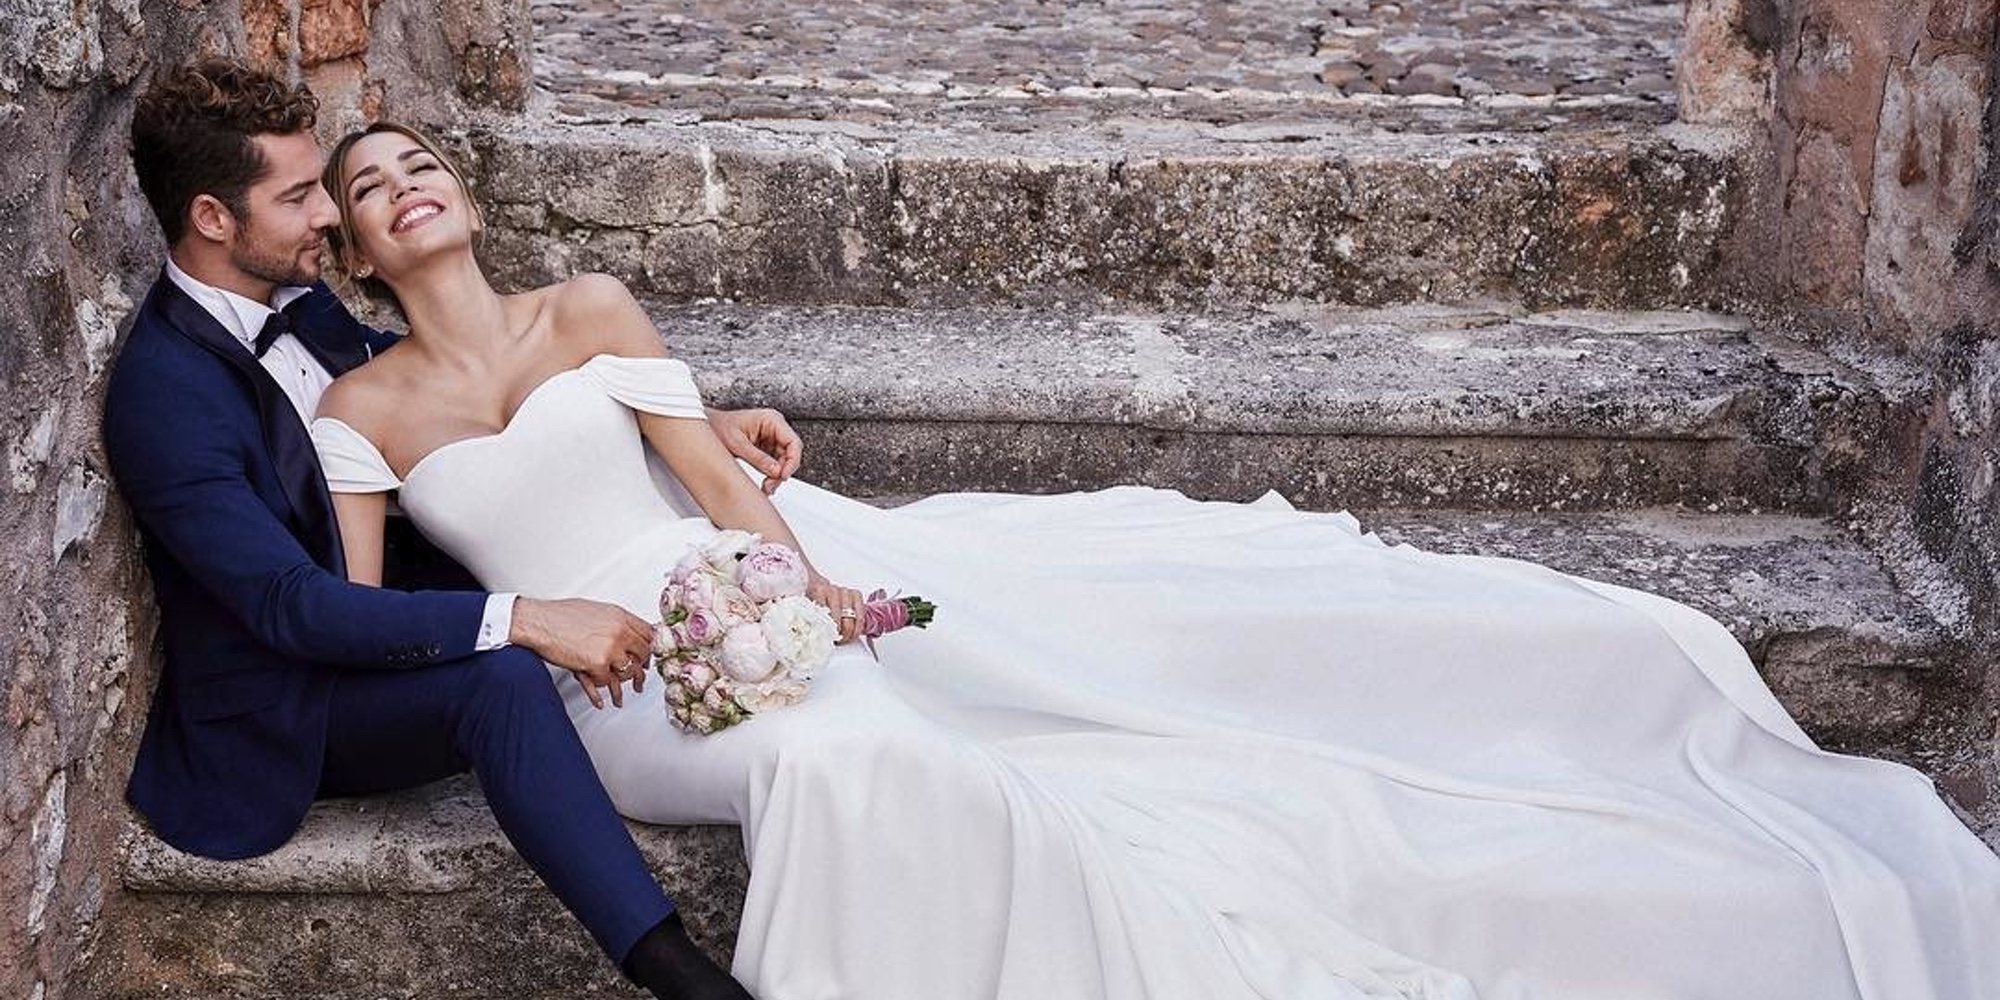 Una boda llena de detalles: Rosanna Zanetti y David Bisbal presumen de su segundo look durante su enlace